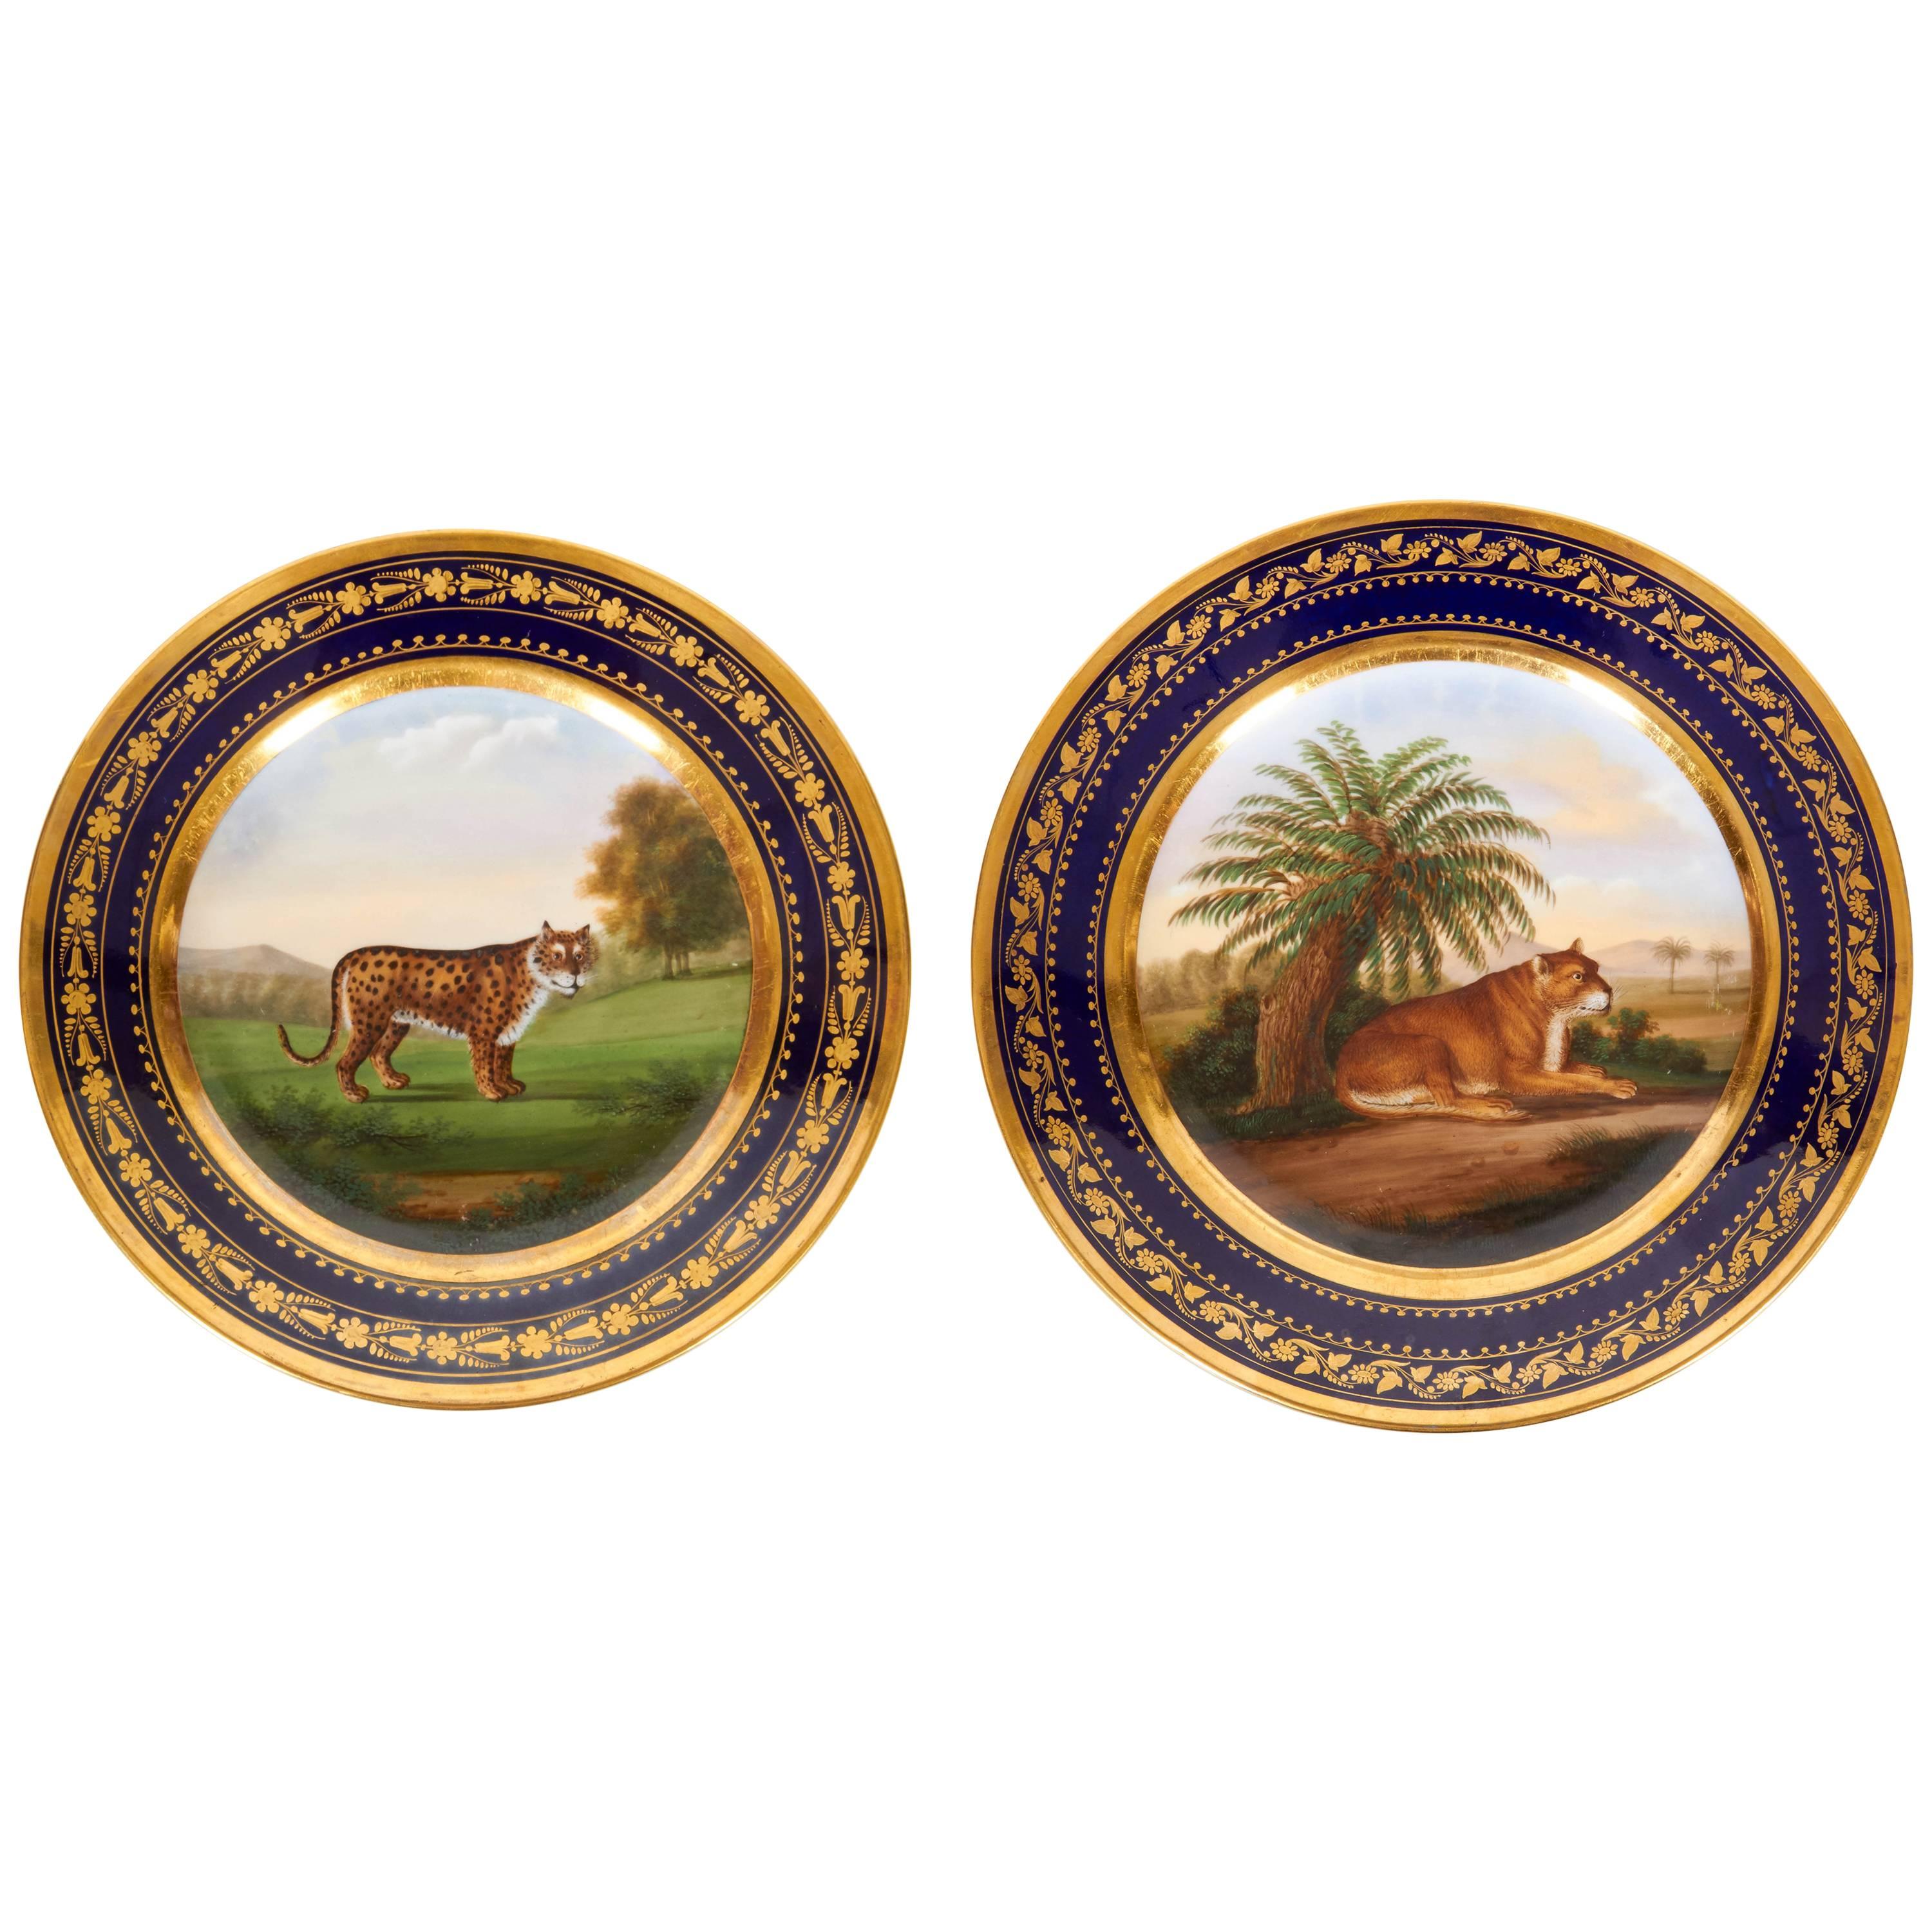 Paire d'assiettes en porcelaine "Darte Brothers" représentant une lionne et une guépard en vente